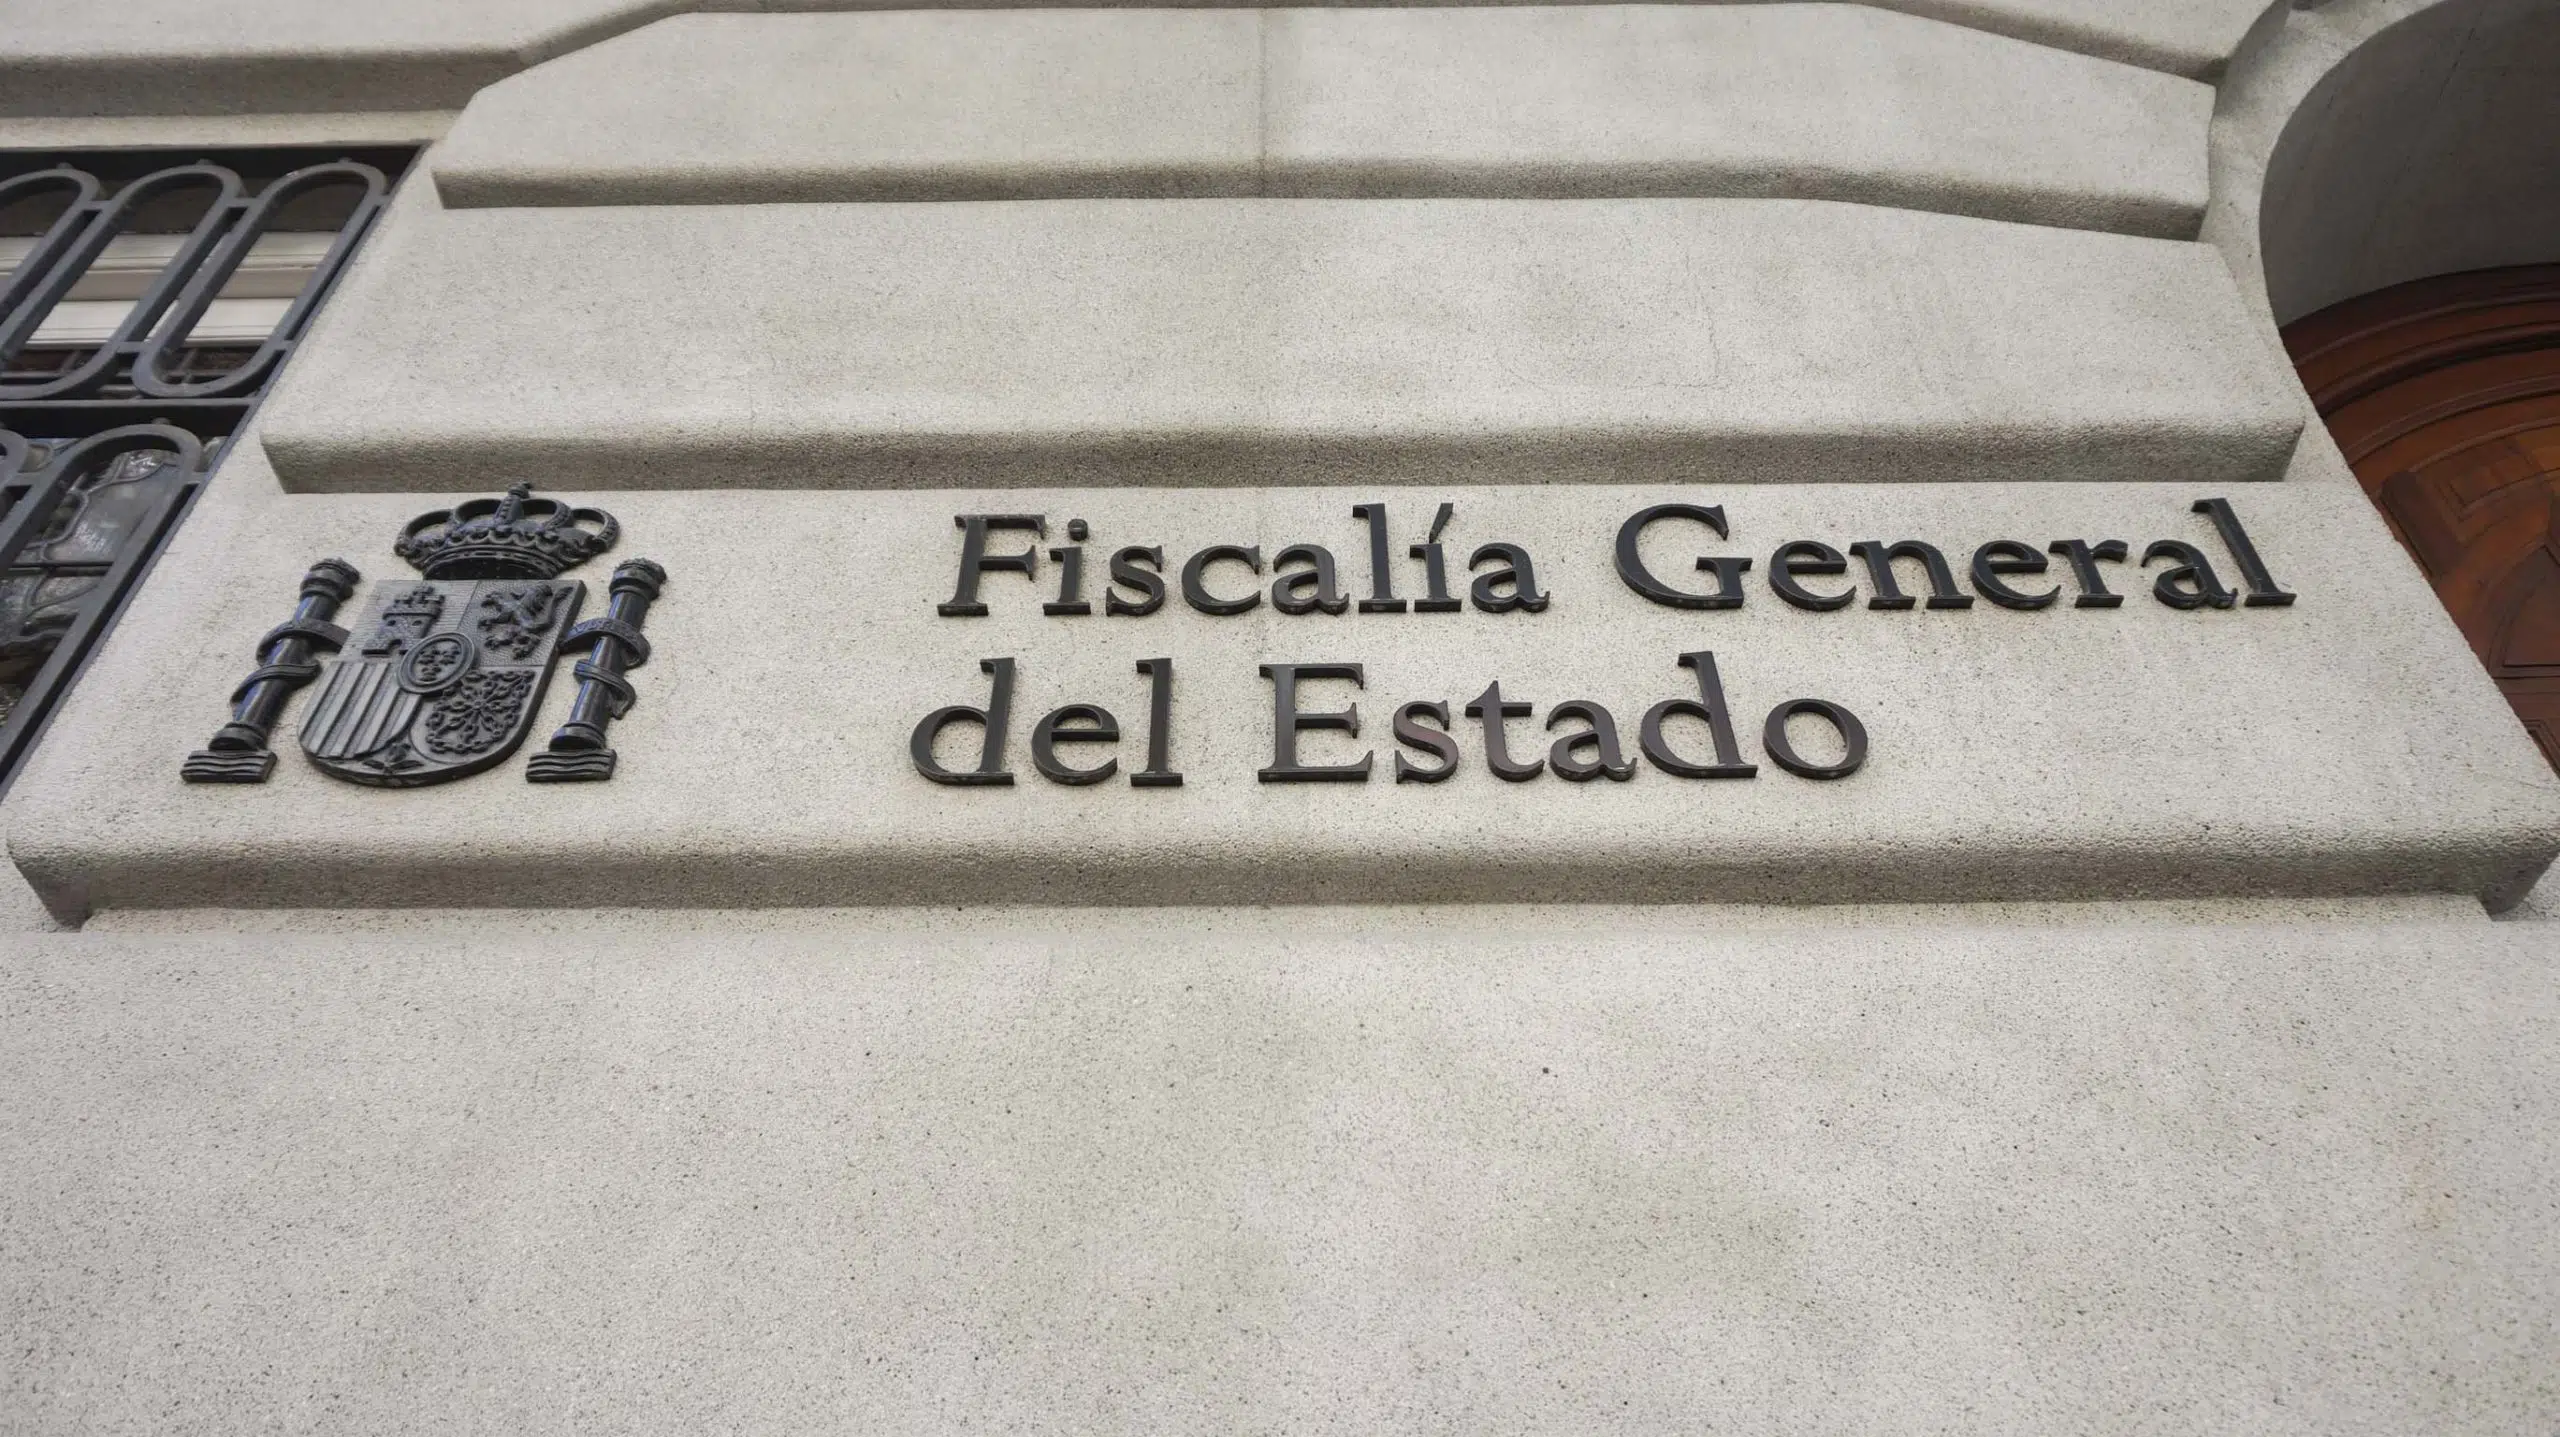 El Ministerio Fiscal tendrá cabecera propia en el Boletín Oficial del Estado, por primera vez en la historia